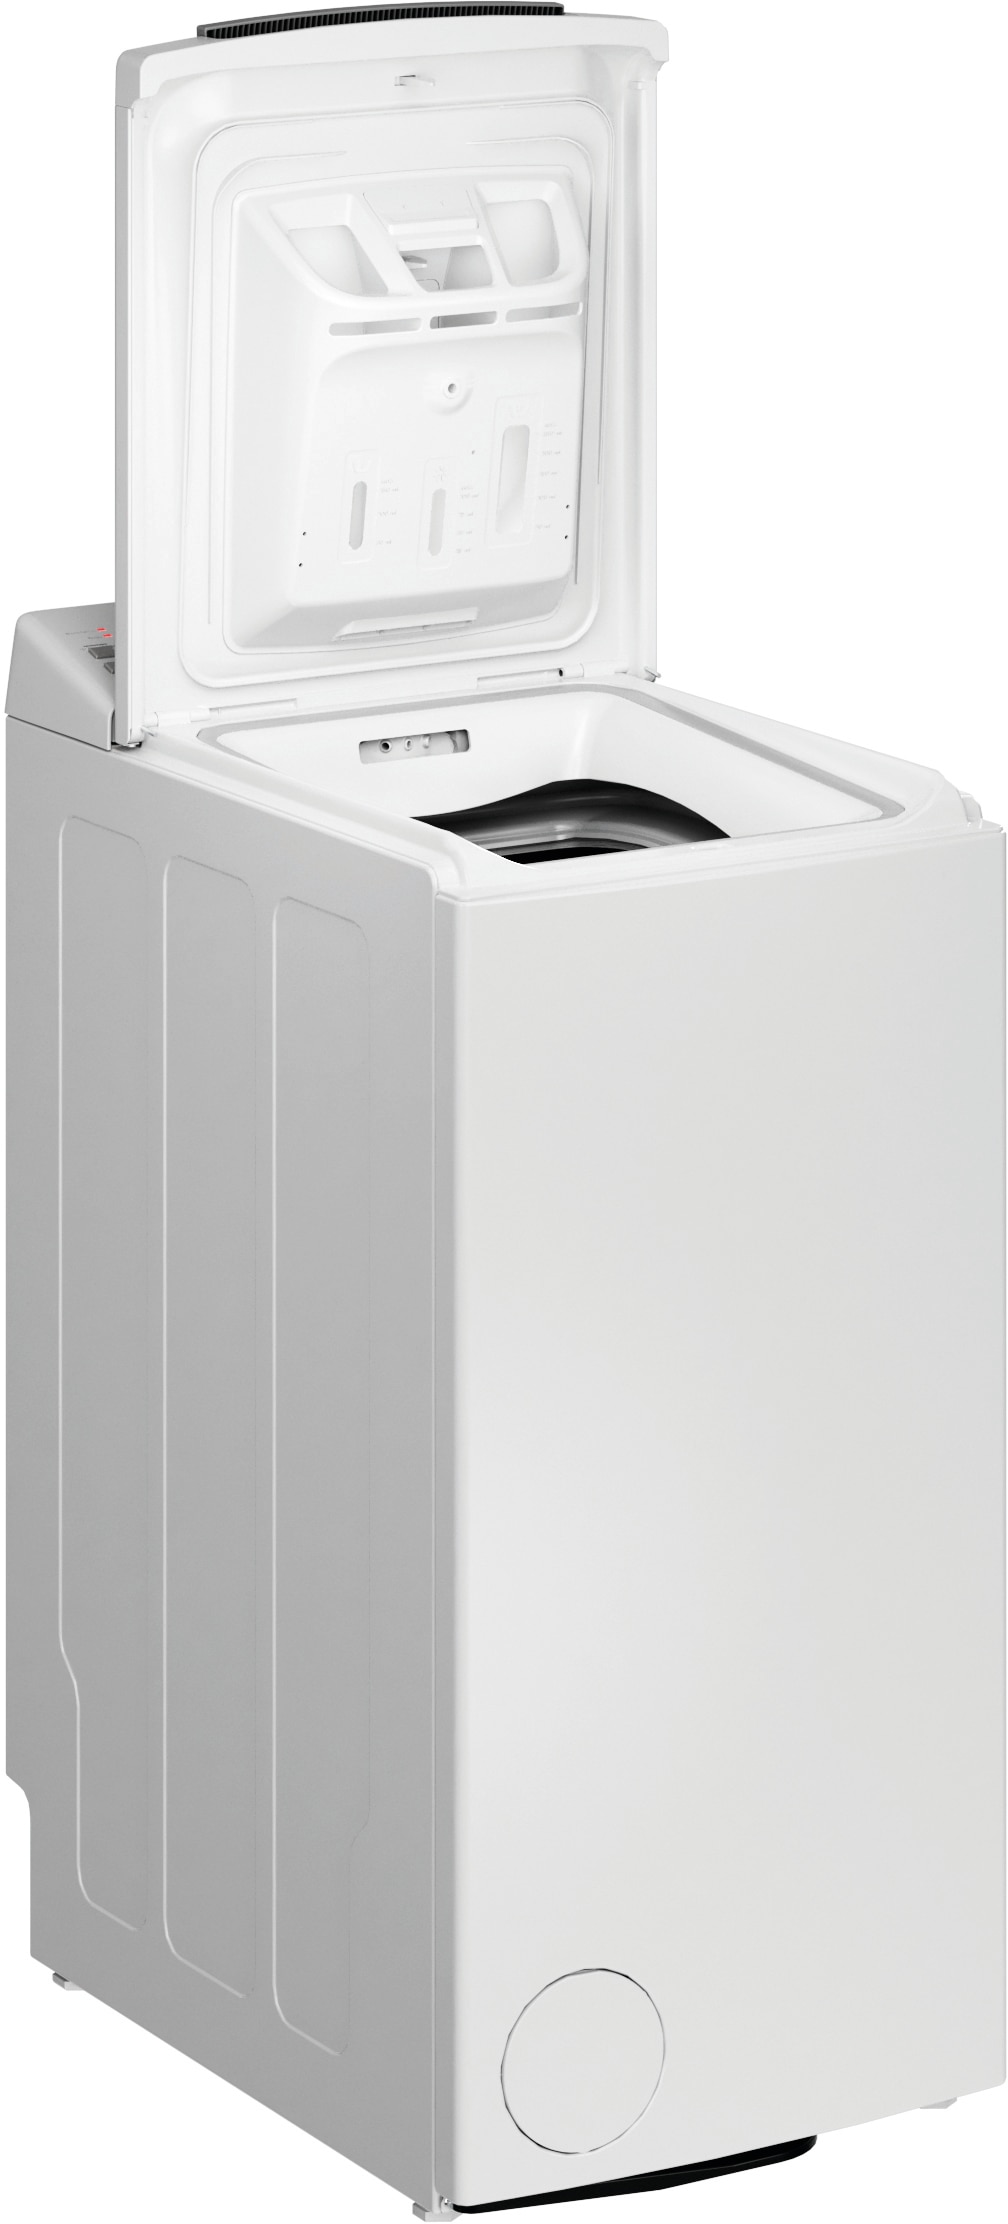 BAUKNECHT Waschmaschine Toplader "WMT Eco Shield 6523 C", WMT Eco Shield 6523 C, 6,5 kg, 1200 U/min